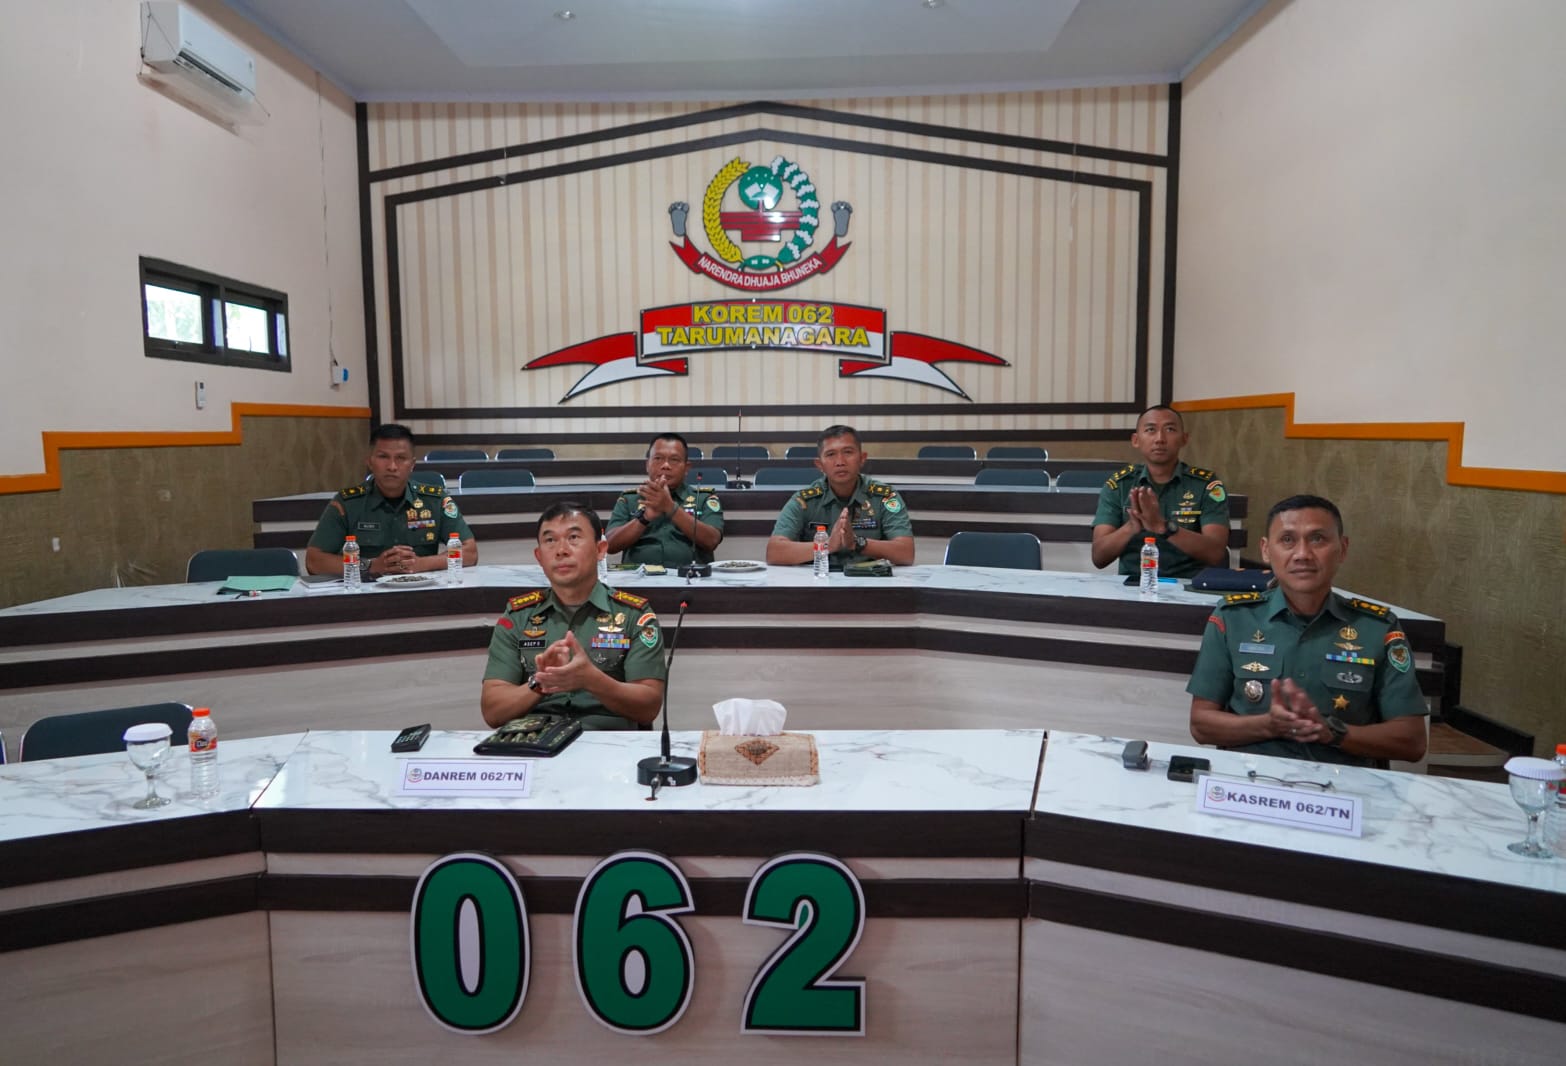 Danrem 062/Tn Mengikuti Vicon Pengarahan Panglima TNI Tentang Netralitas dan Penegakan Hukum